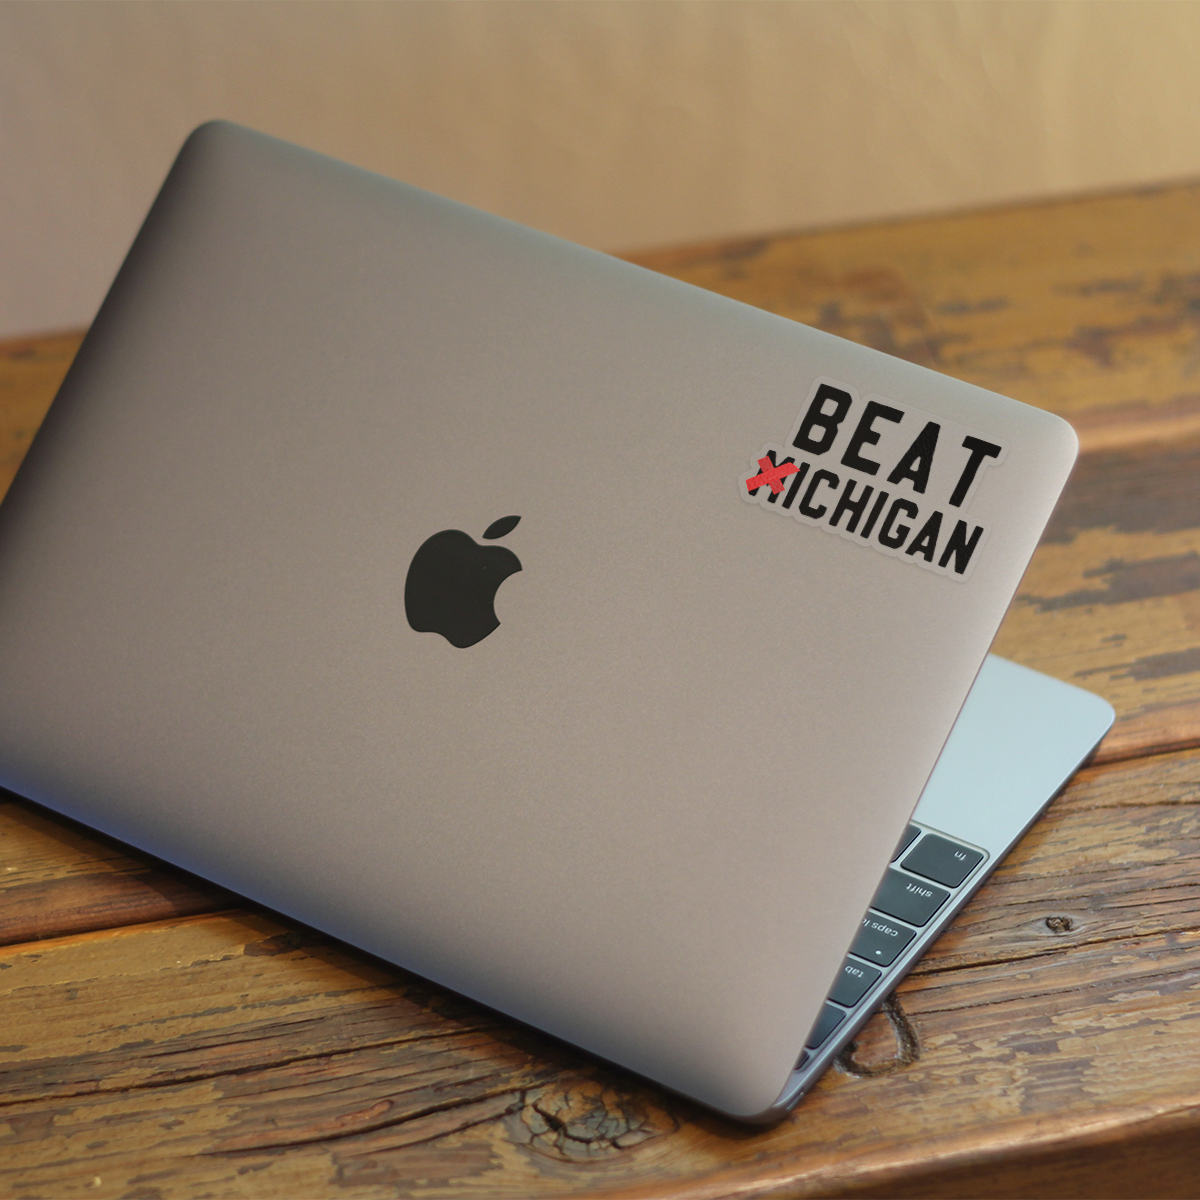 Beat ❌ichigan Sticker